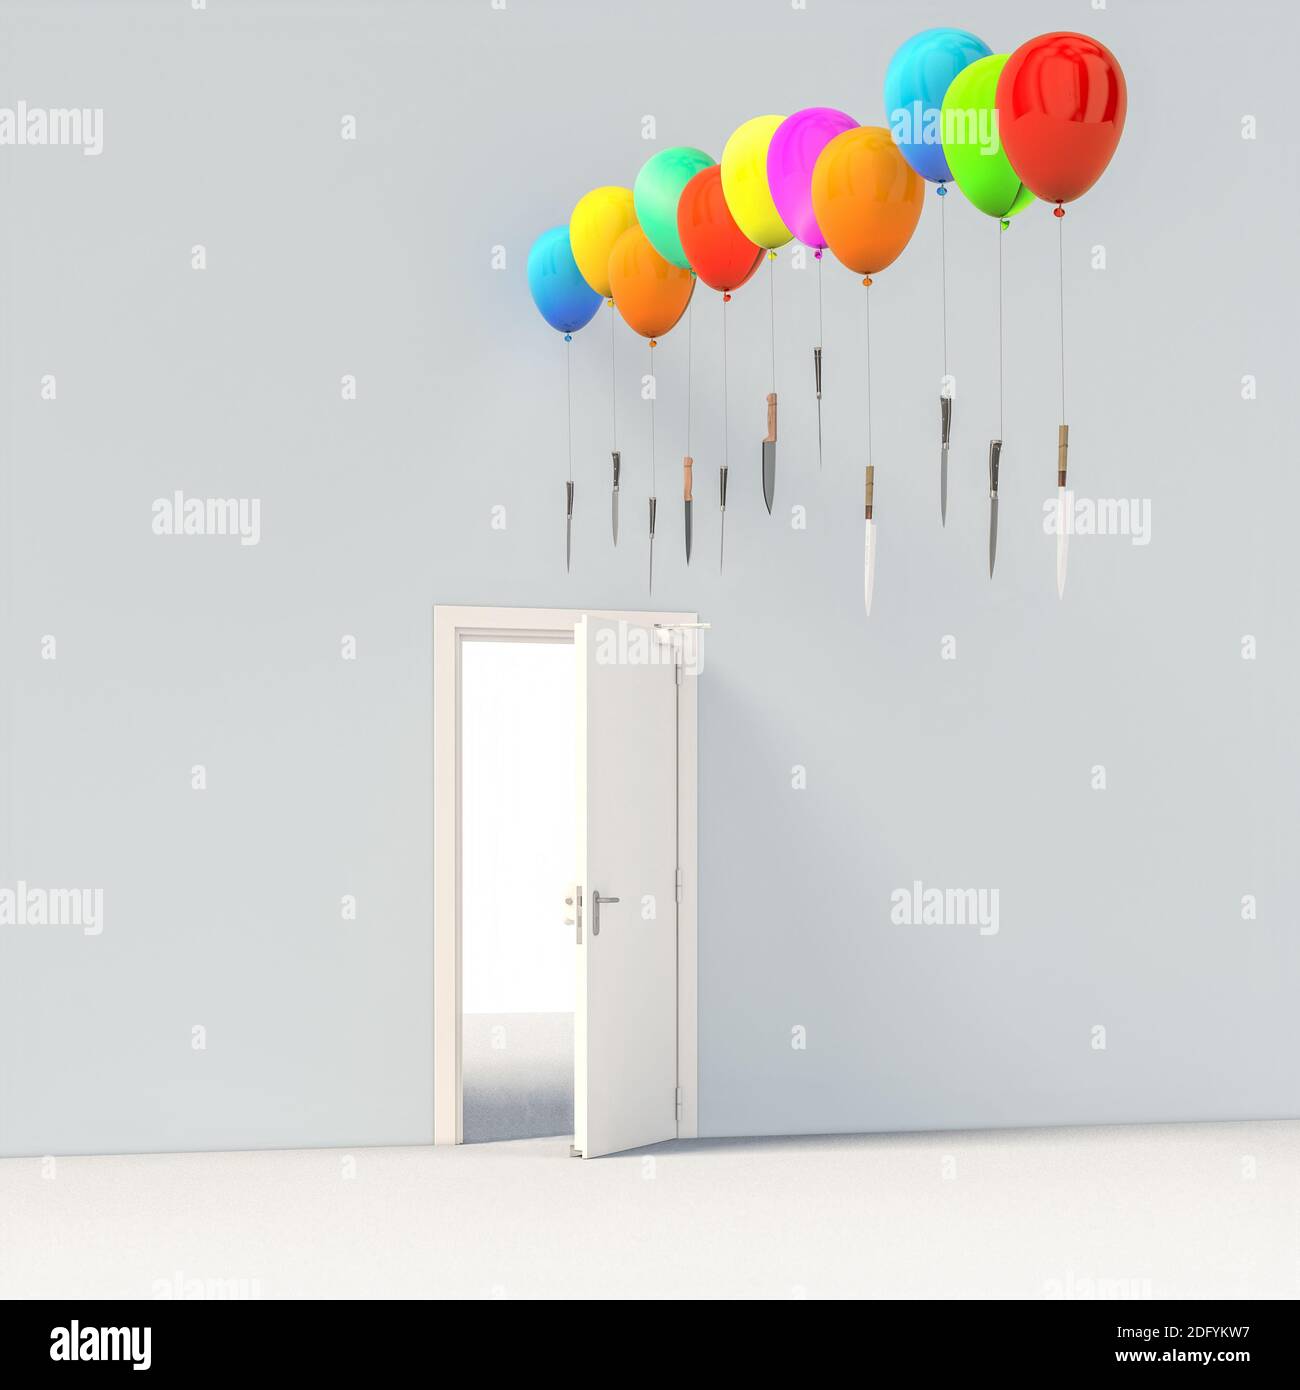 Bunte Luftballons mit scharfen Messern über einer offenen Tür. Gefahrenkonzept. 3d-Rendering. Stockfoto